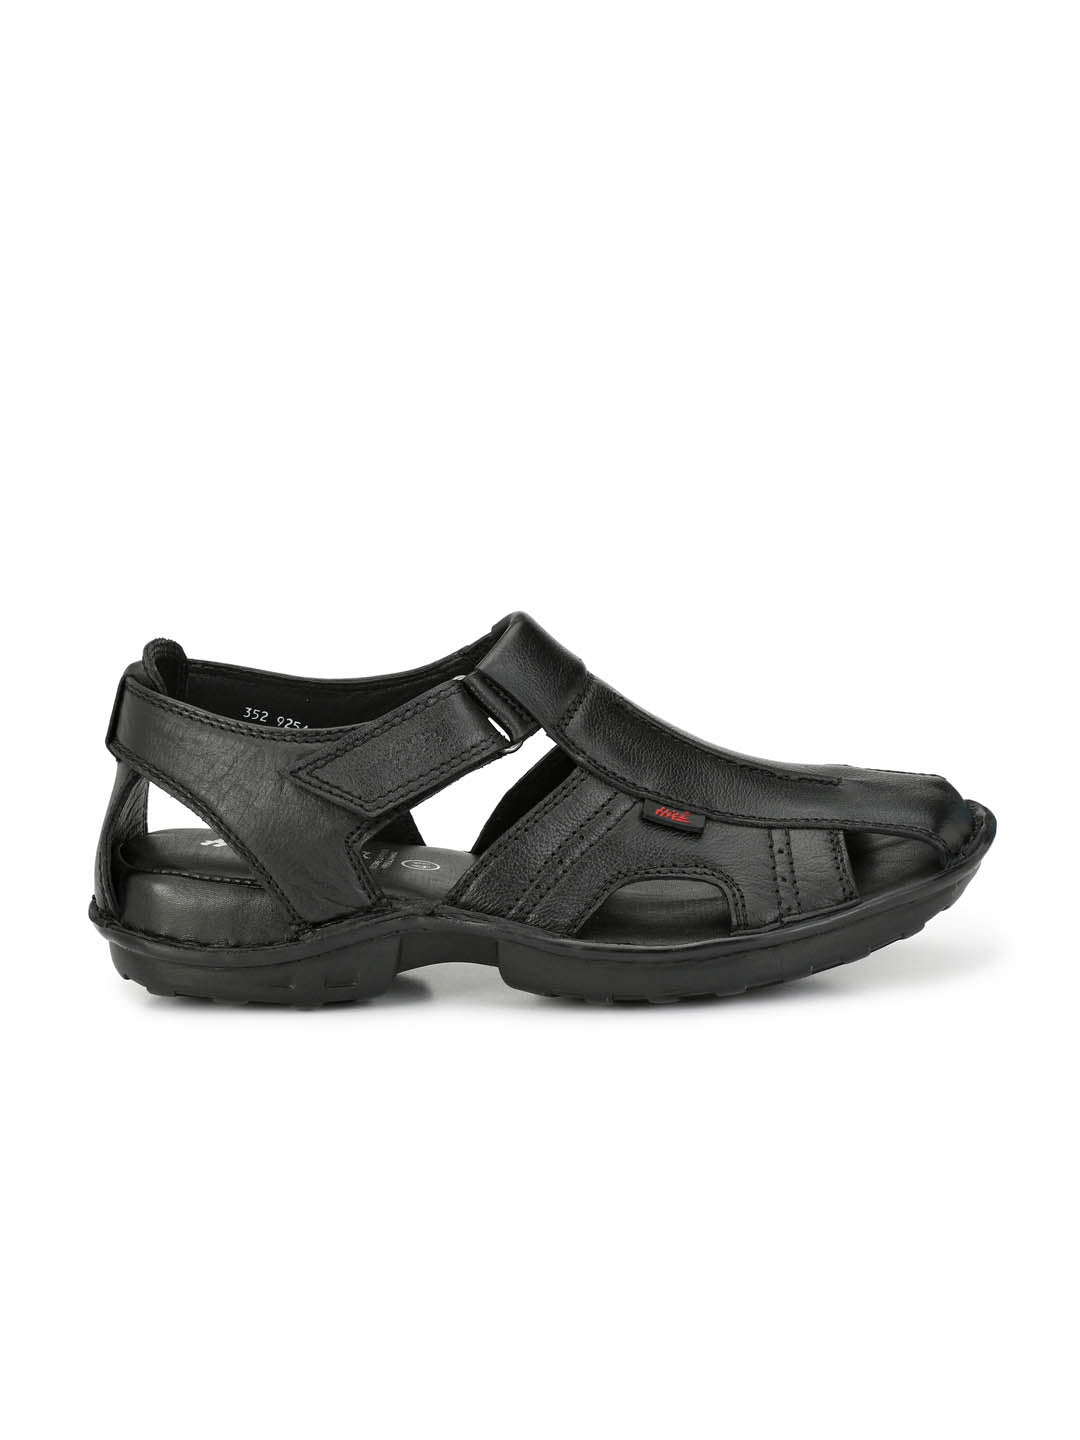 Heels County Men Black Sandals - Buy Heels County Men Black Sandals Online  at Best Price - Shop Online for Footwears in India | Flipkart.com